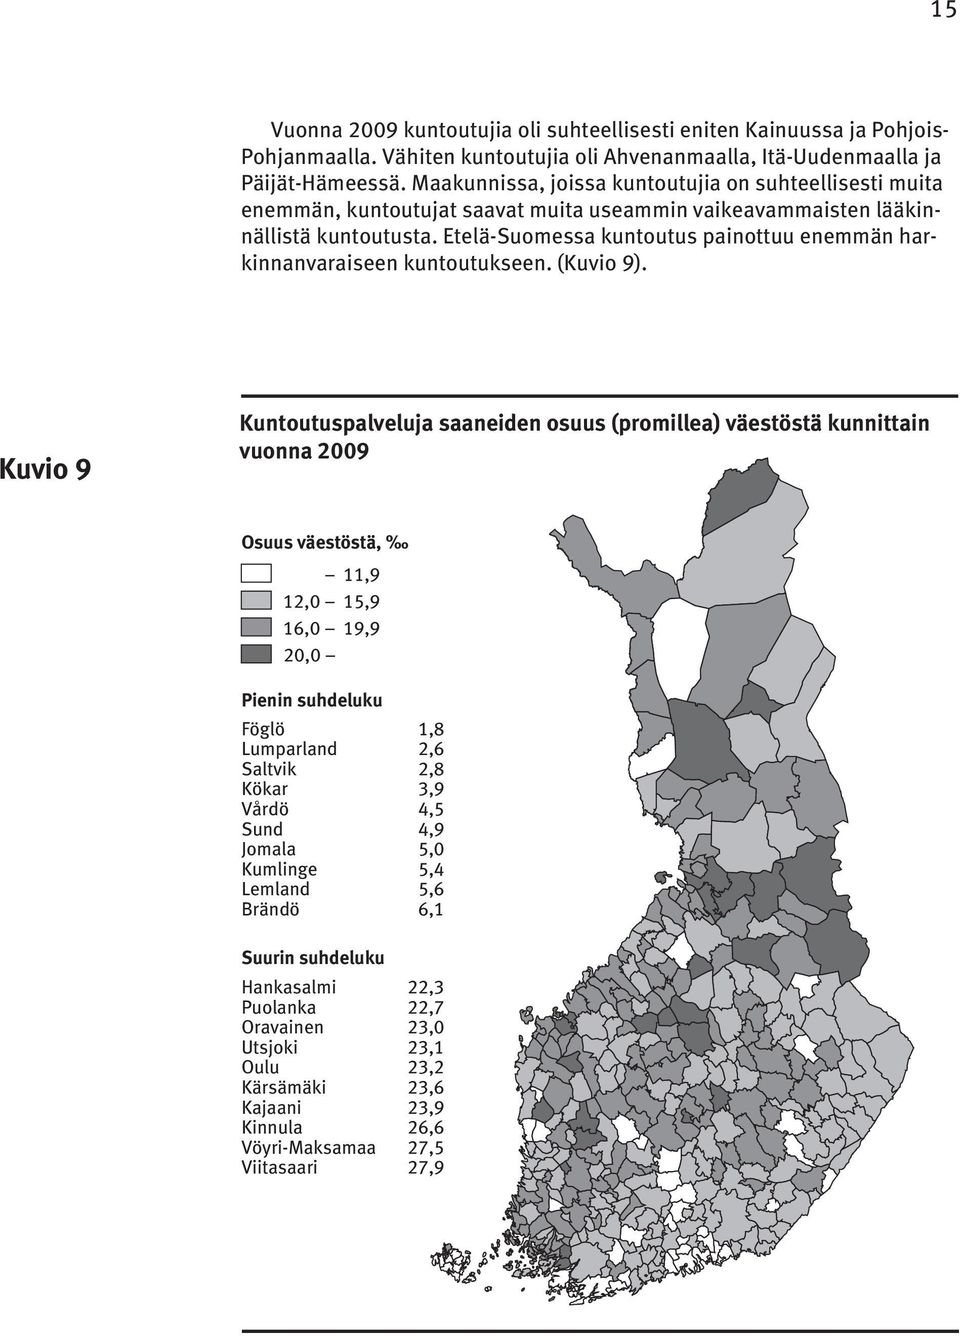 Etelä-Suomessa kuntoutus painottuu enemmän harkinnanvaraiseen kuntoutukseen. (Kuvio 9).